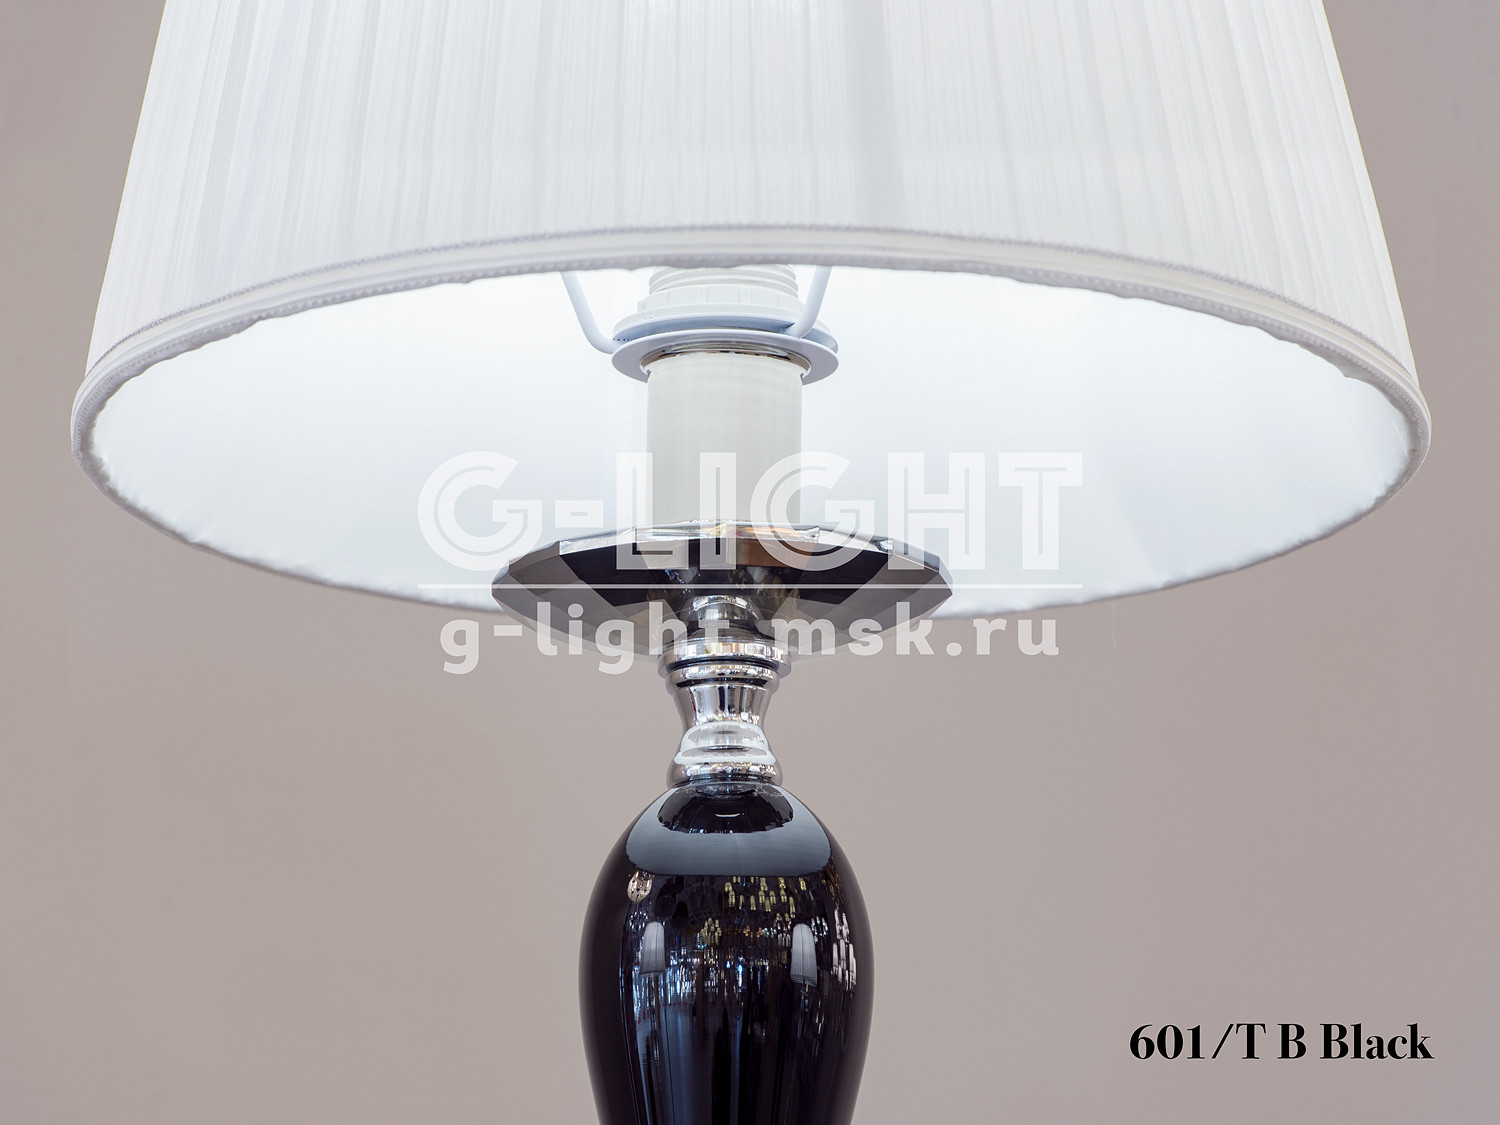 Настольная лампа 601/T B Black - изображение 4